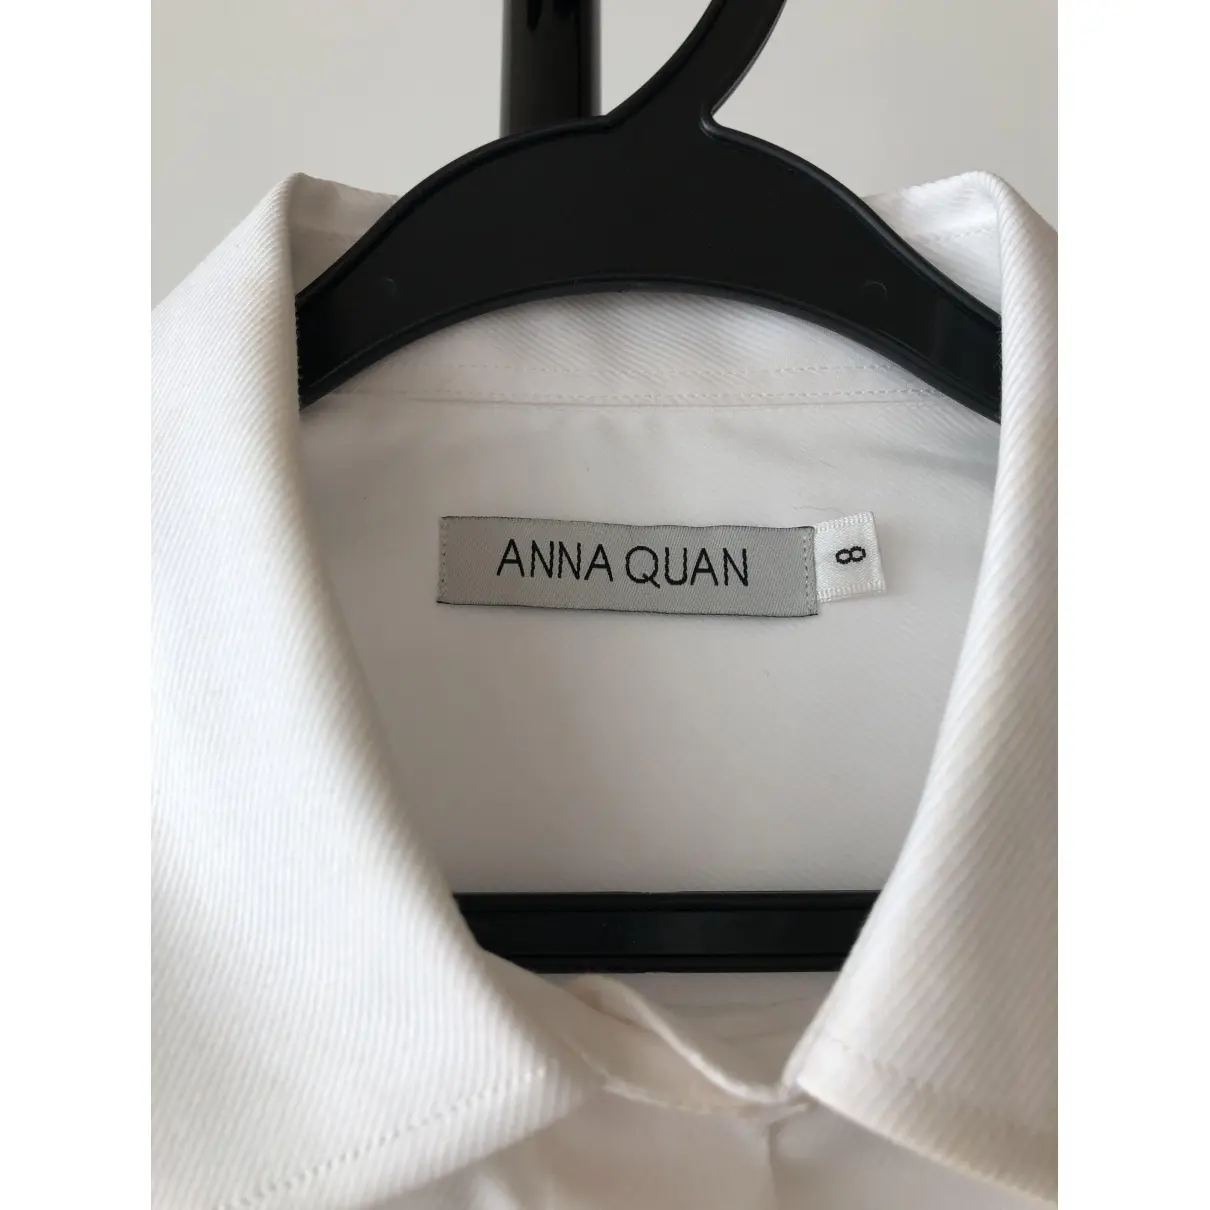 Buy Anna Quan Shirt online